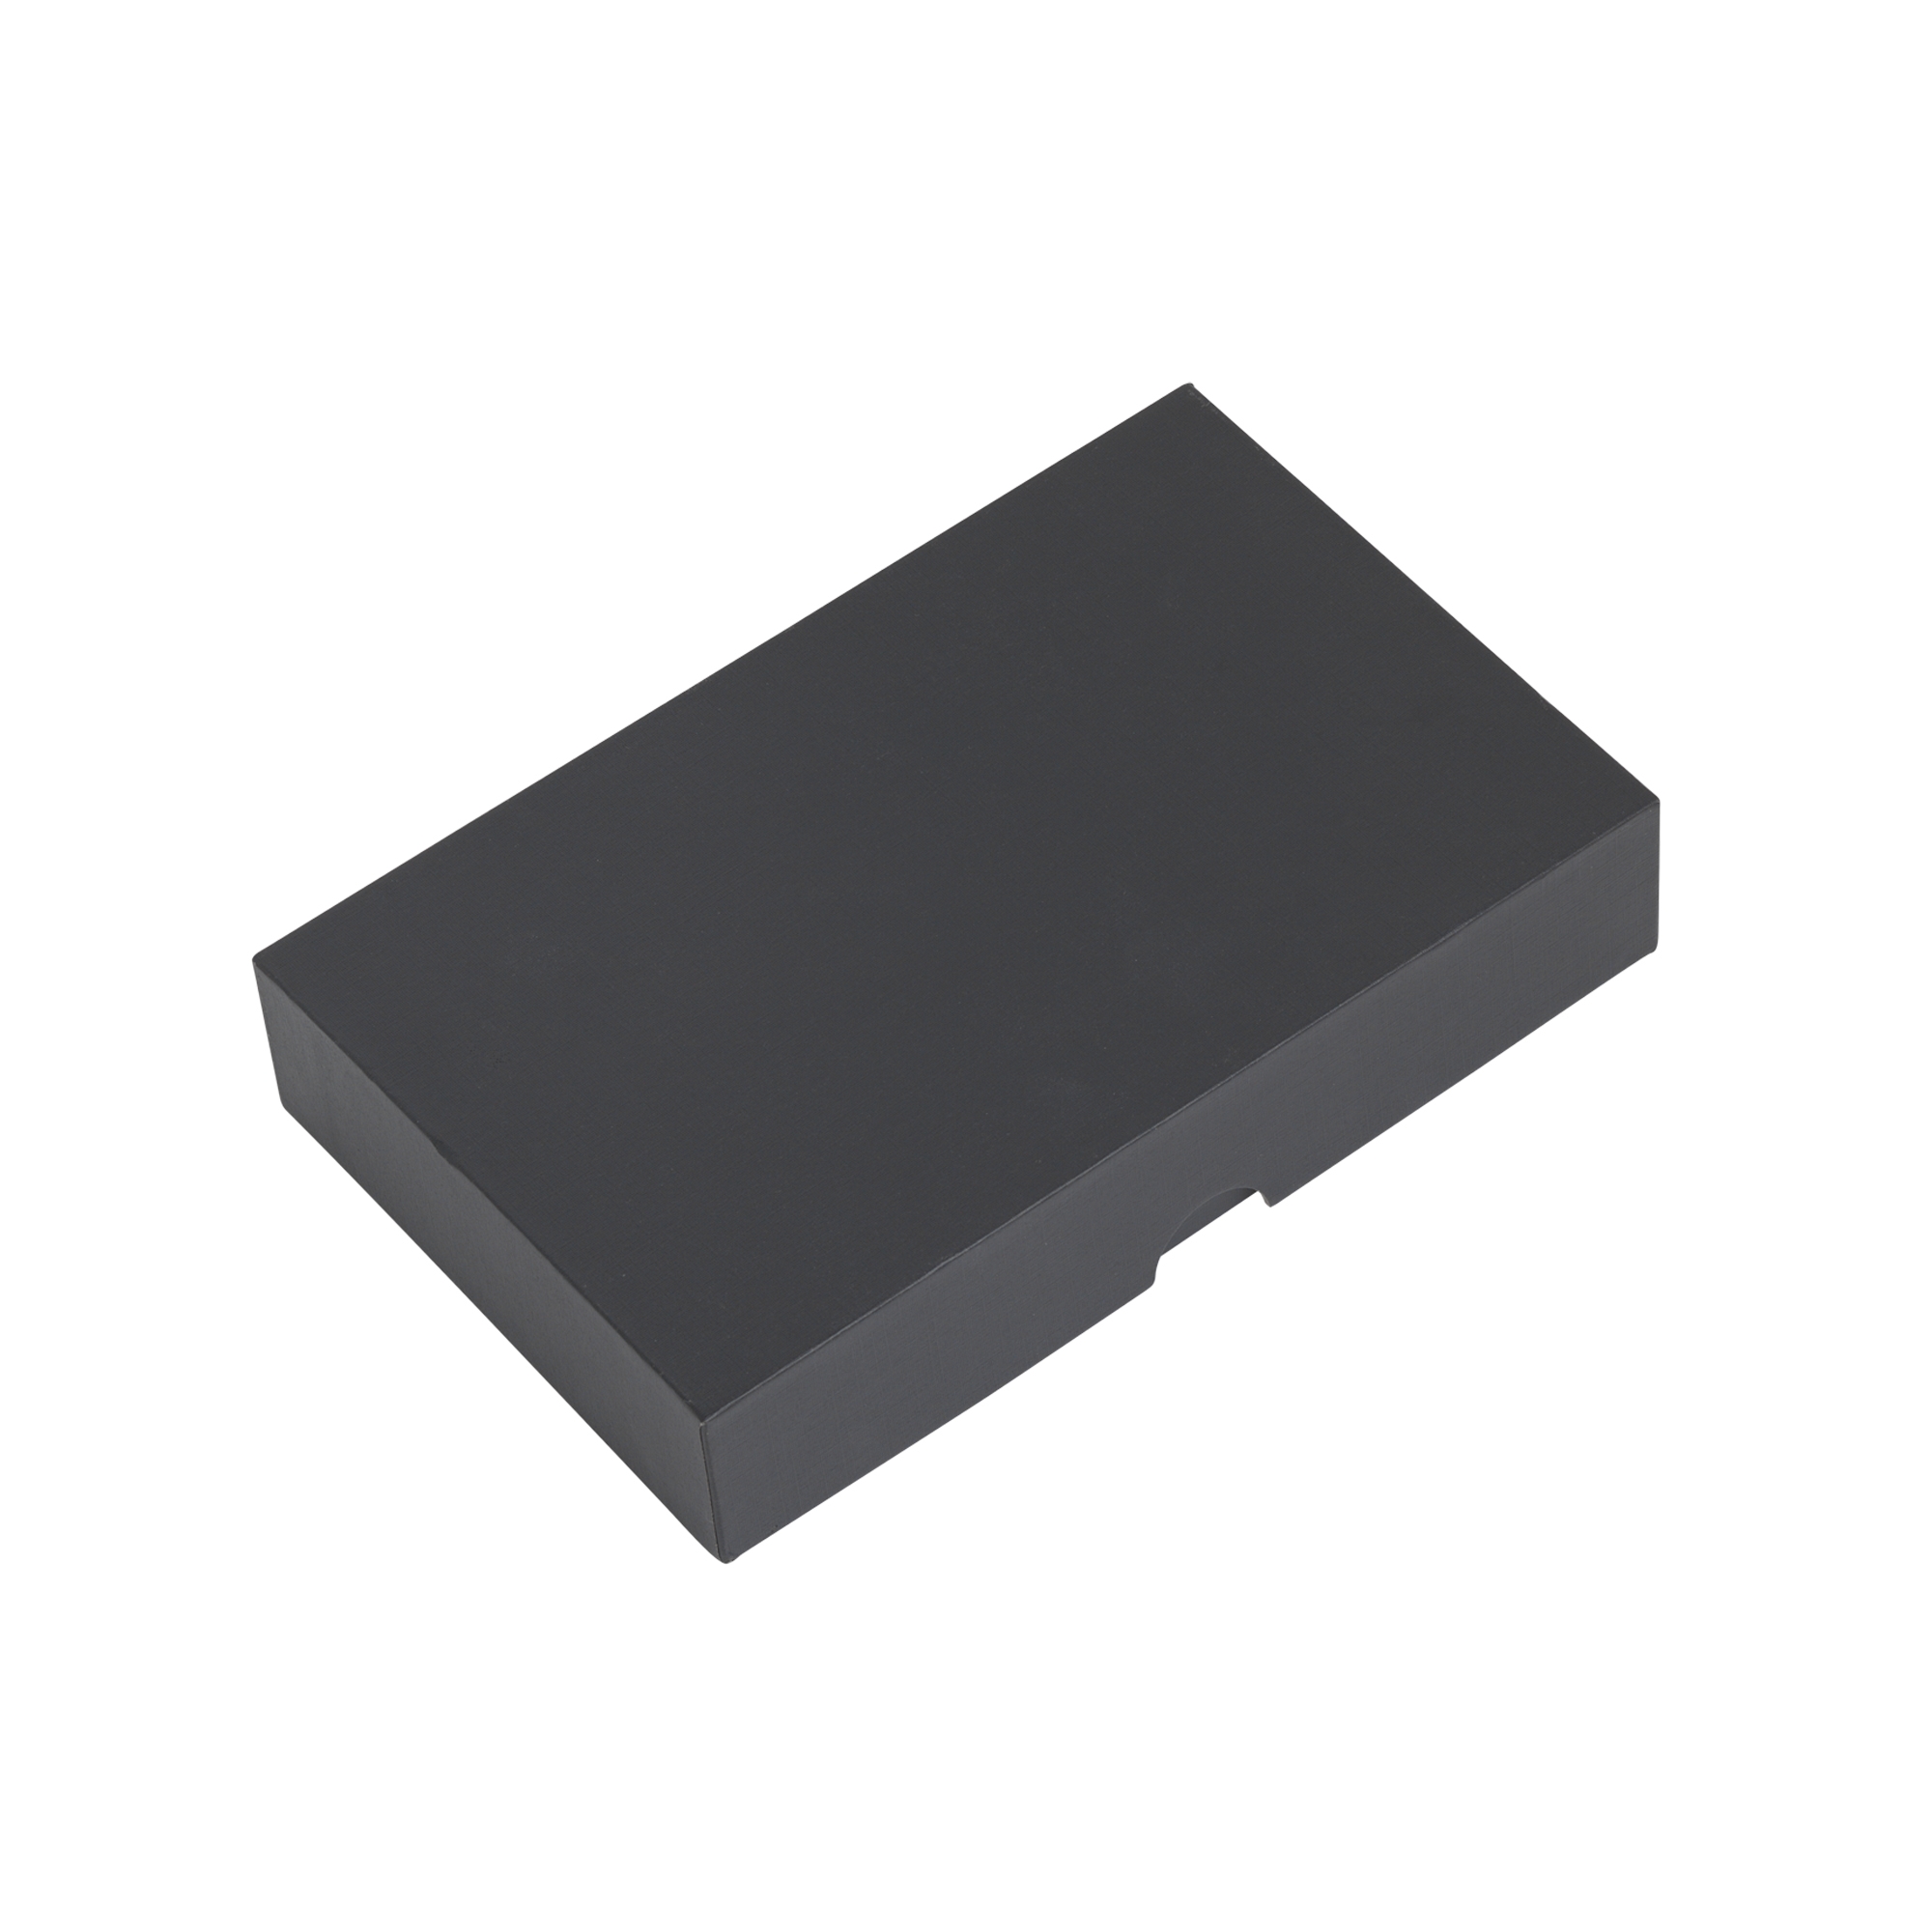 Зарядное устройство "Камень" с покрытием soft grip, 4000 mAh в подарочной коробке, черный, пластик/soft grip